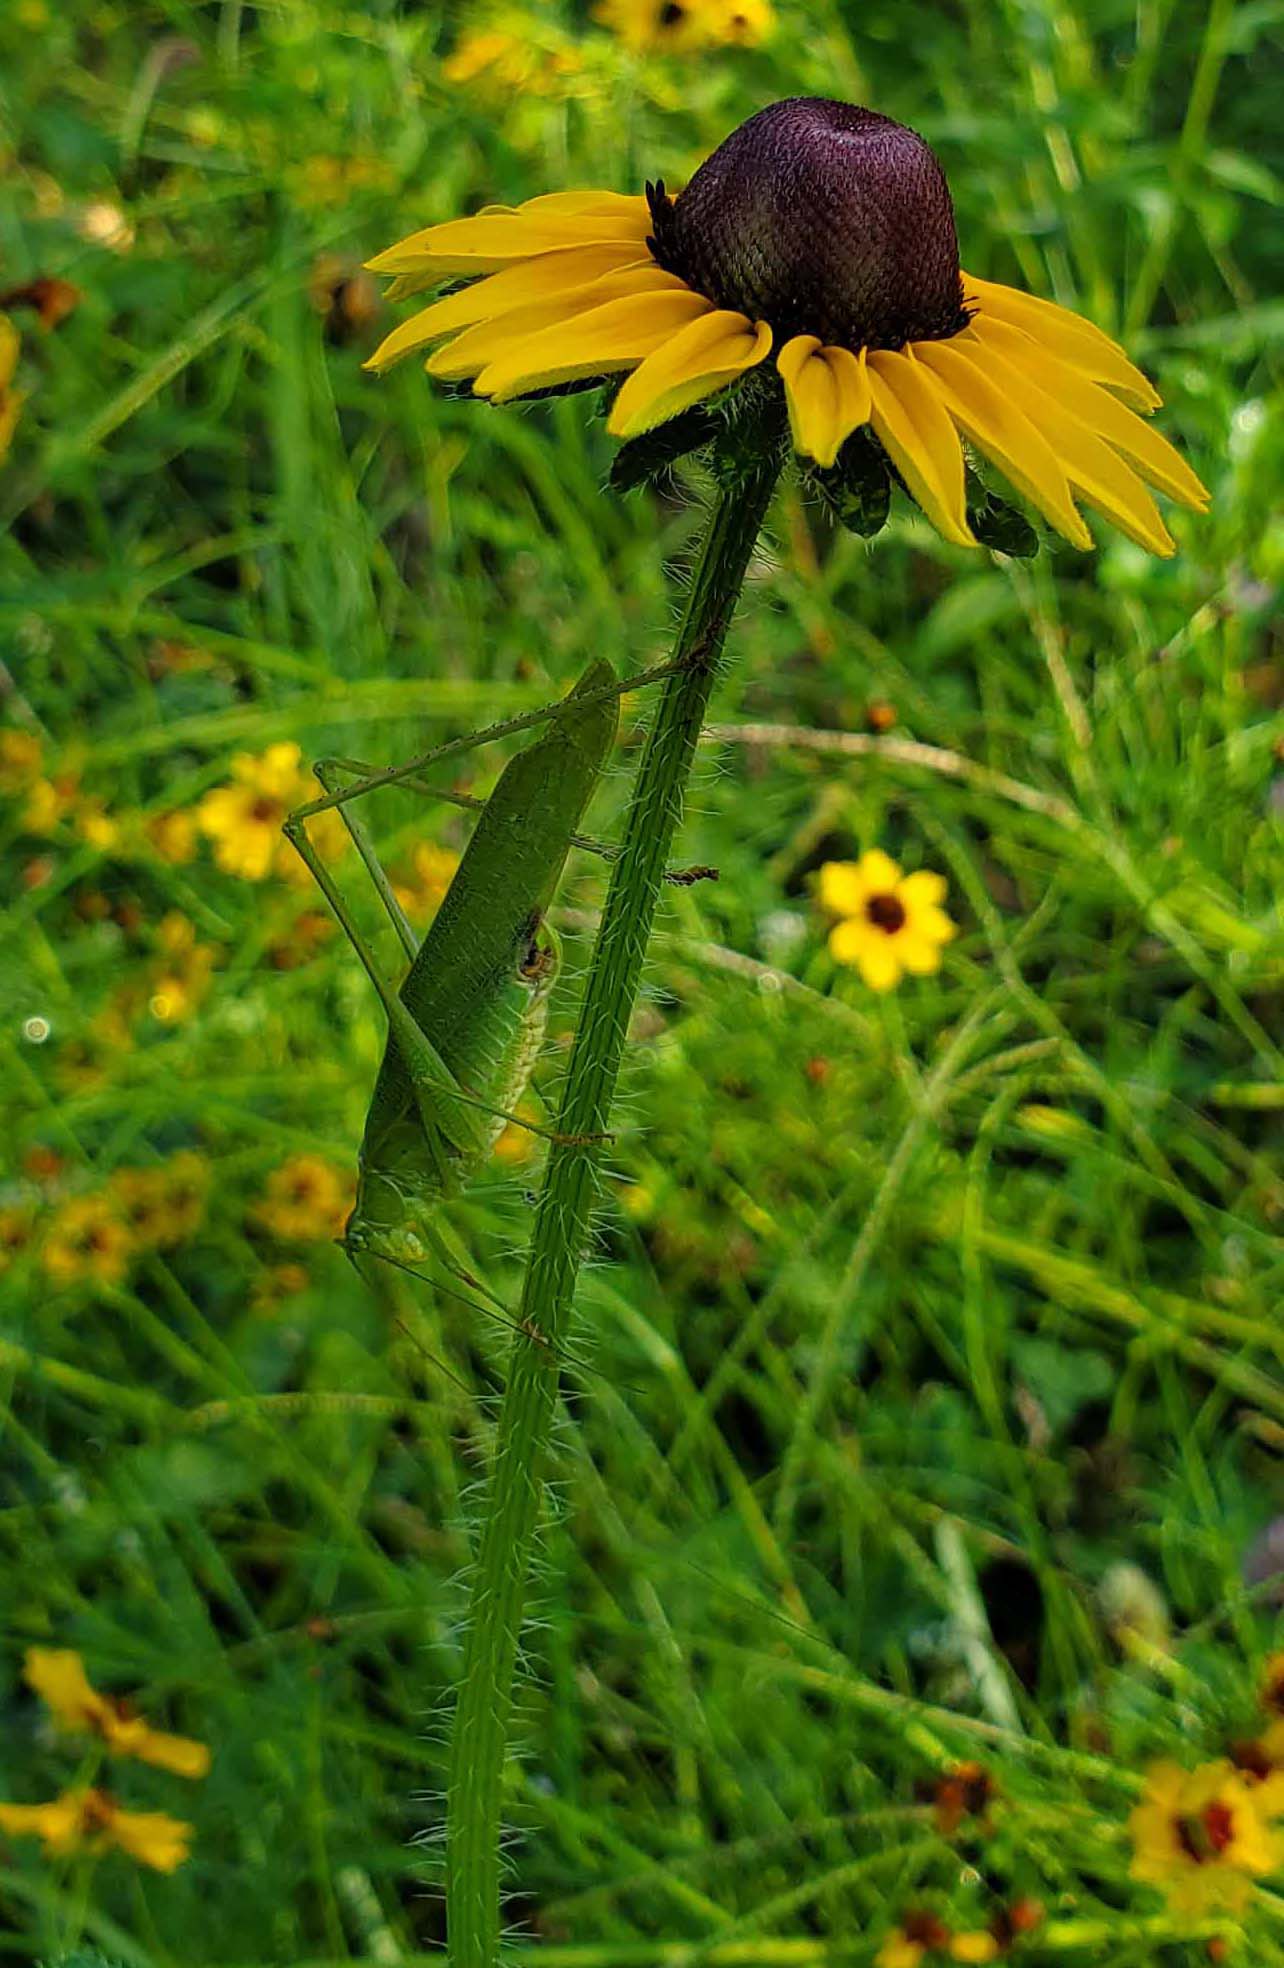 katydid on plant stalk